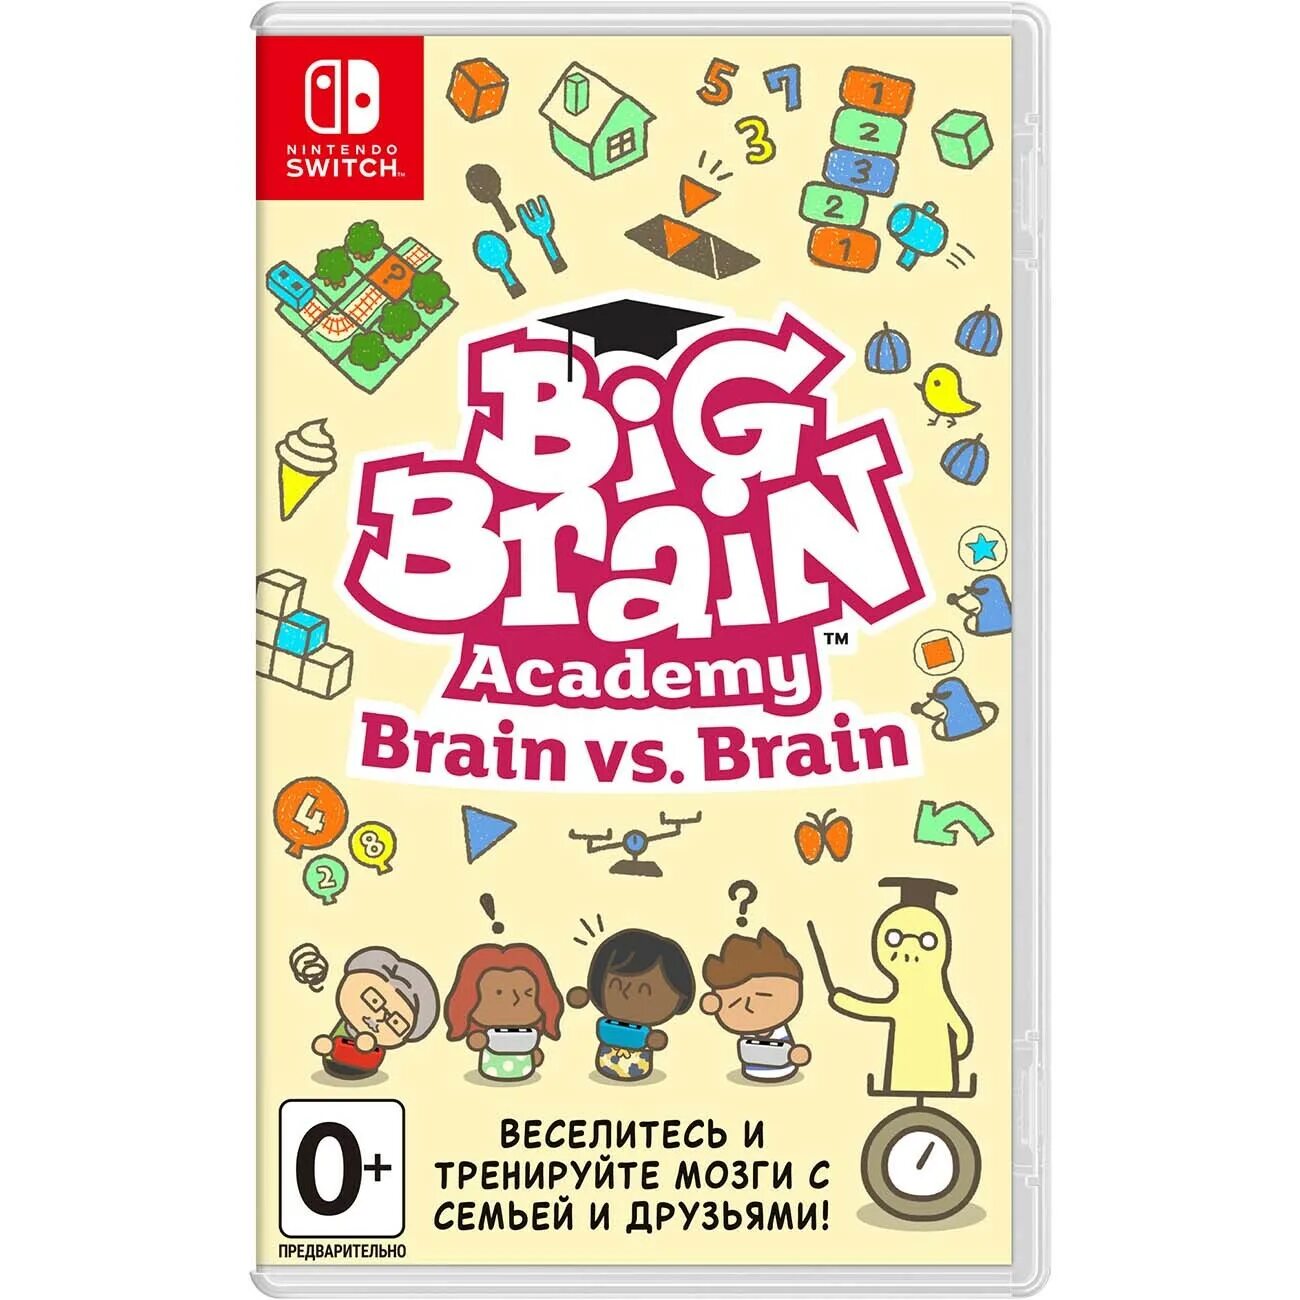 Brain vs brain. Big Brain Academy: Brain vs. Brain (Switch). Big Brain Academy. Big Brain Academy Nintendo. Big Brain Nintendo Switch.